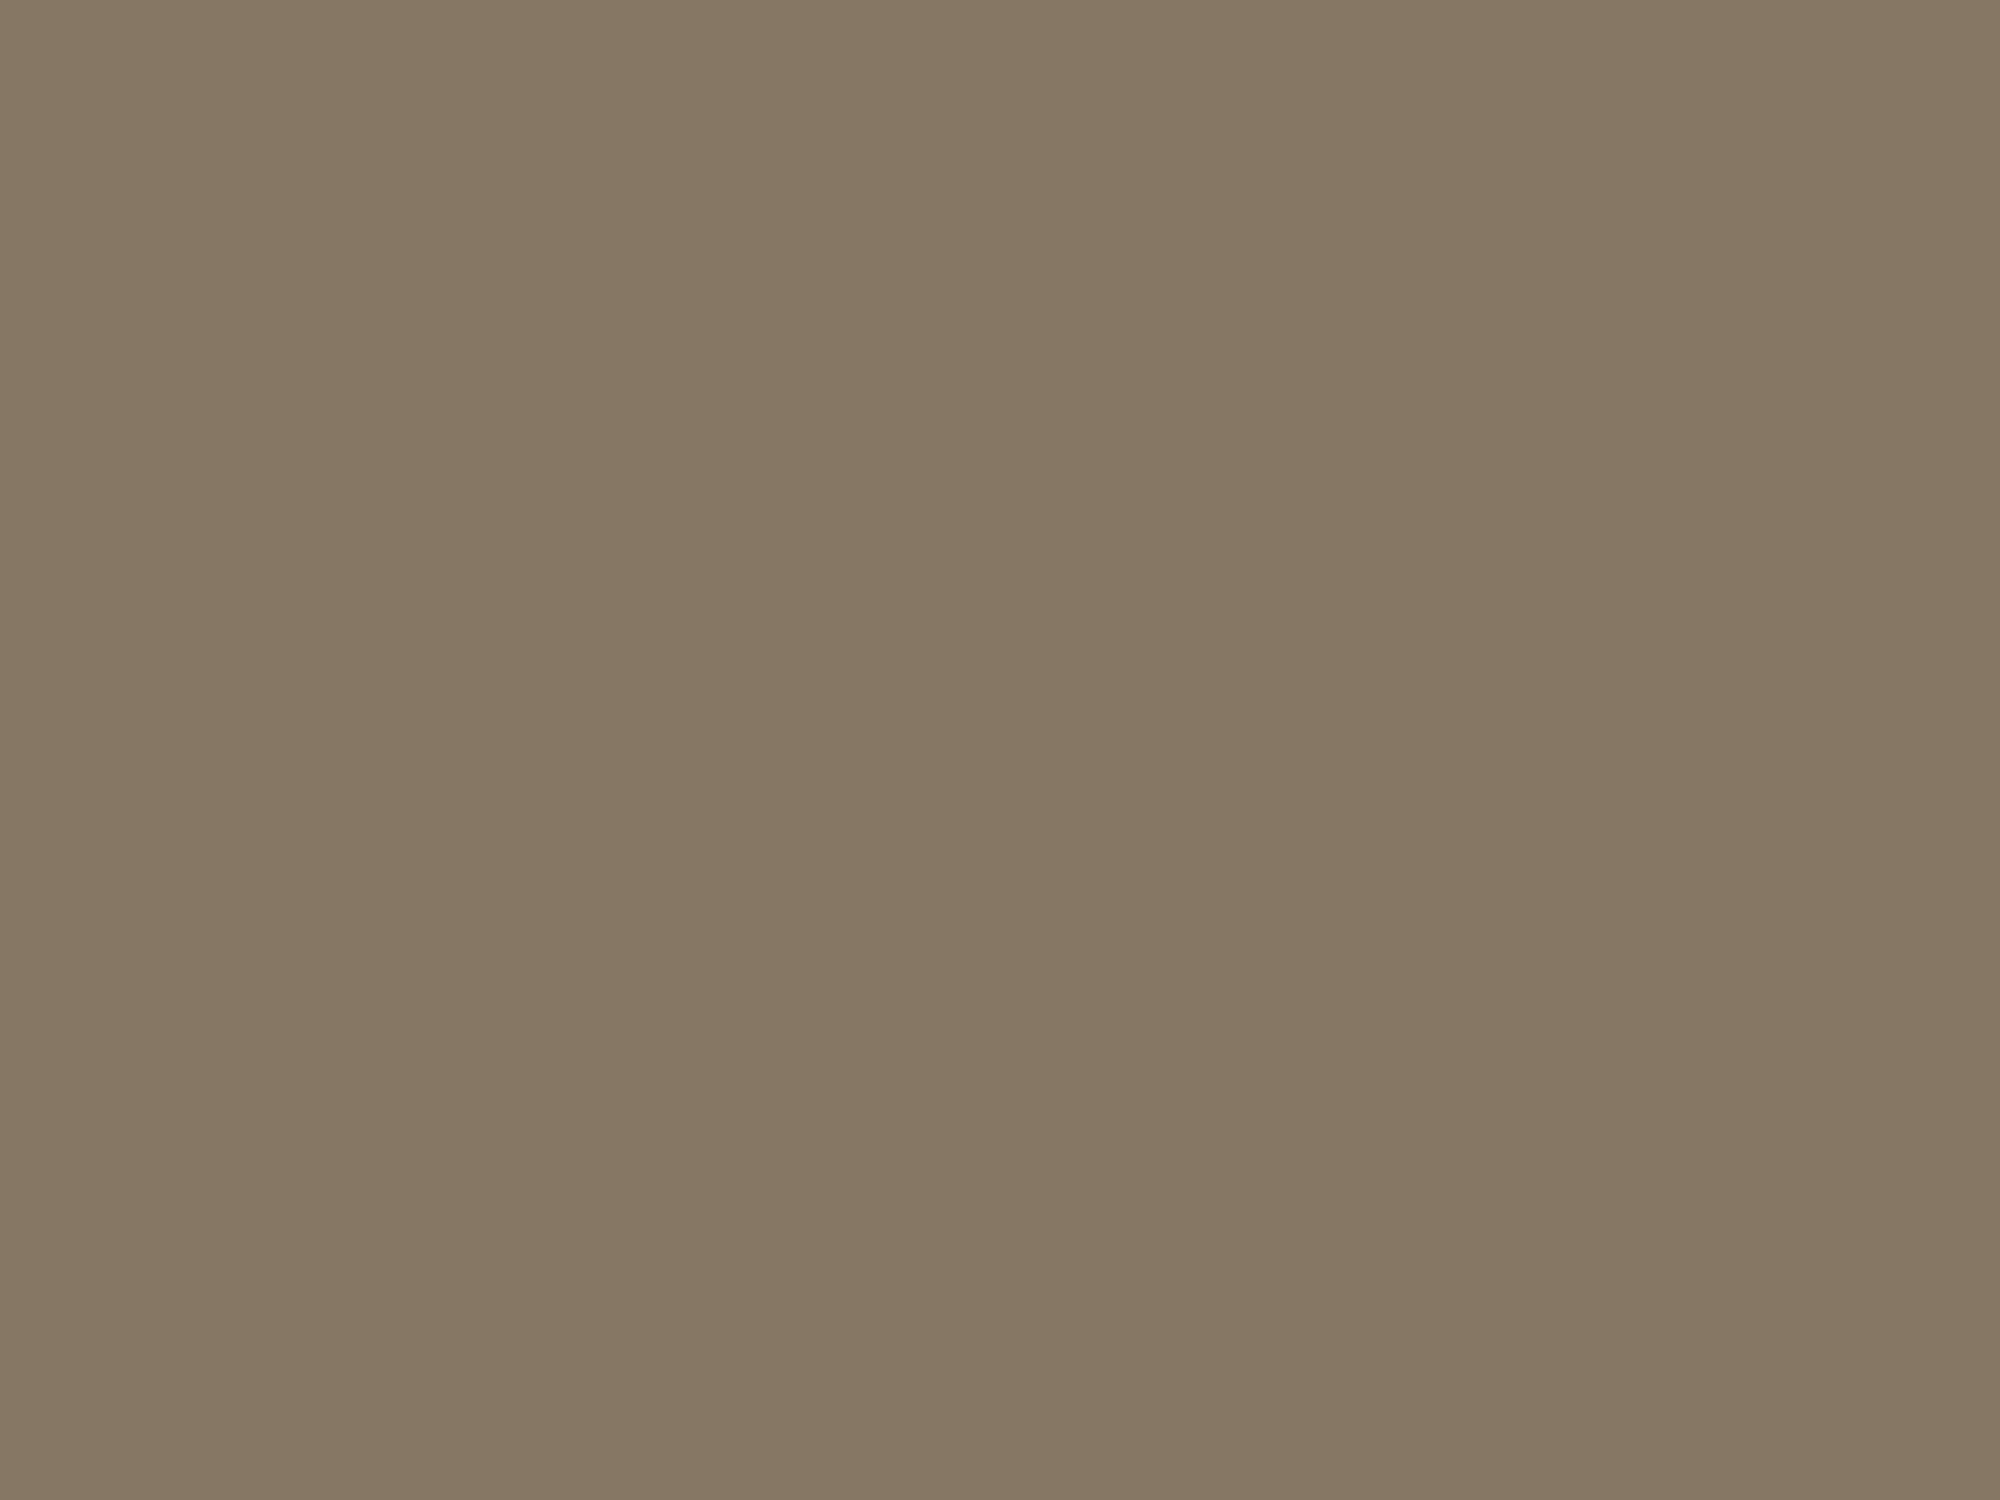 Давид Штеренберг. Стол с сахарницей. Кубистический фактурный этюд (фрагмент). 1920. Государственная Третьяковская галерея, Москва